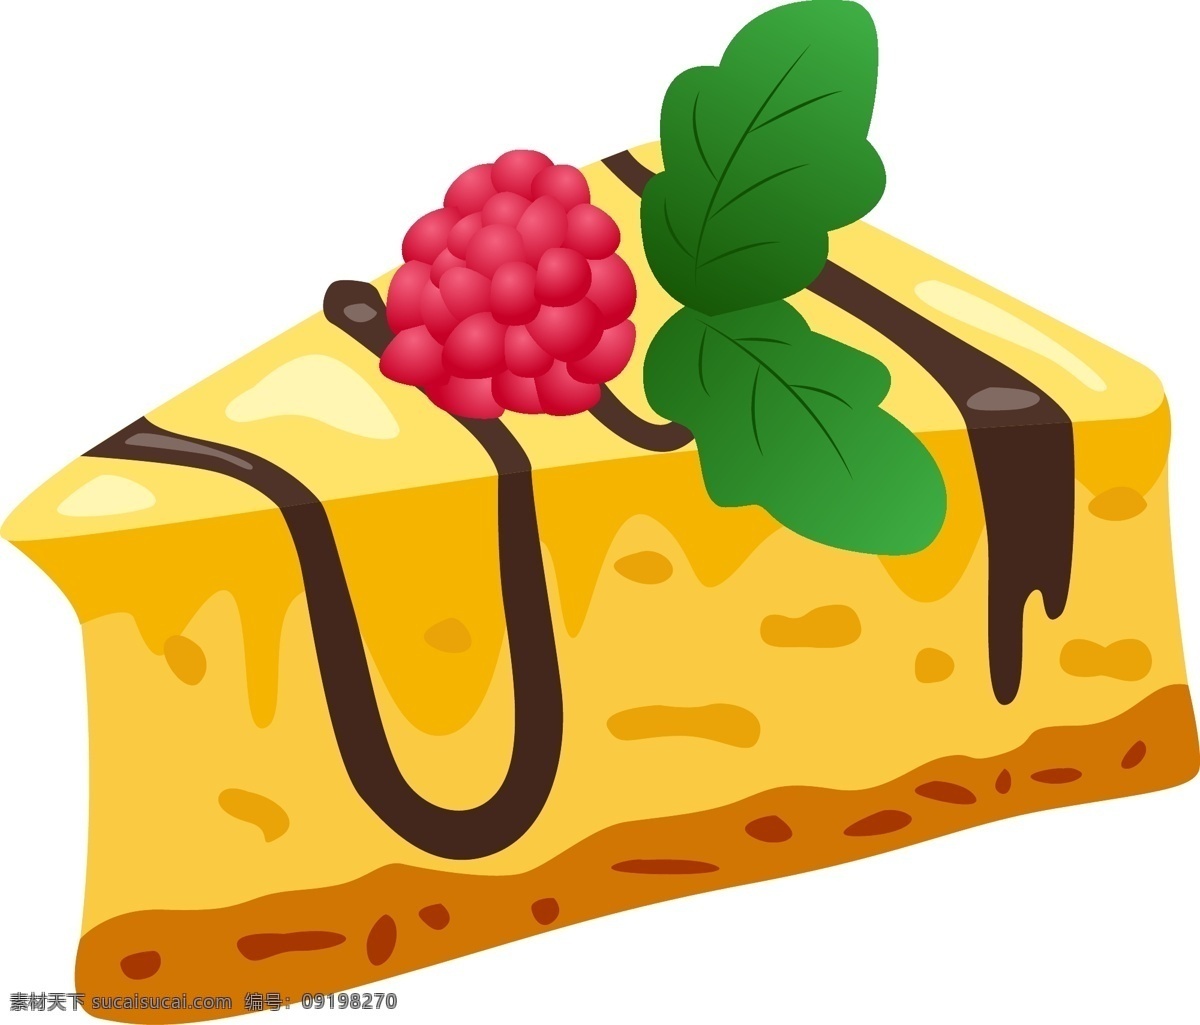 矢量 小 蛋糕 甜点 造型 卡通蛋糕 甜品蛋糕 蛋糕图案 蛋糕装饰 蛋糕食物 小蛋糕 甜品 食物